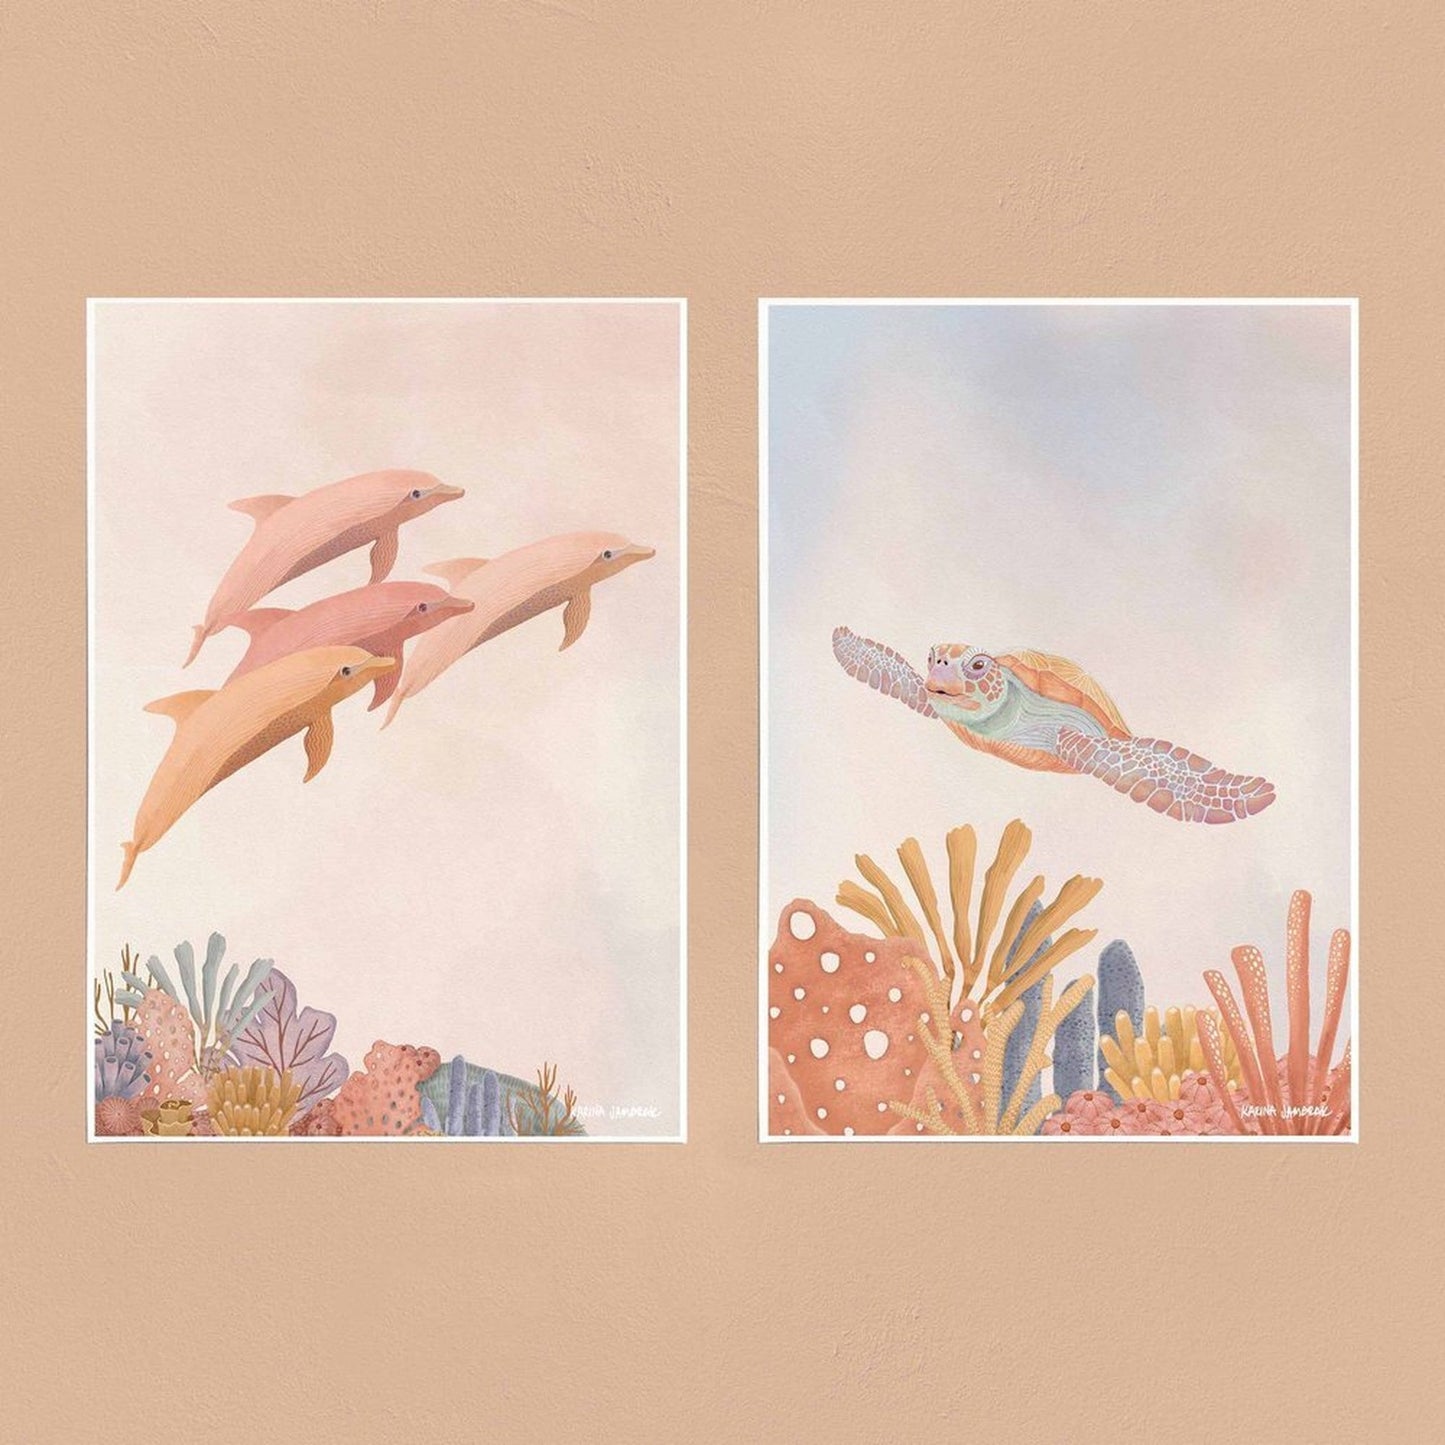 【sale】【karina jambrak art】reef glider